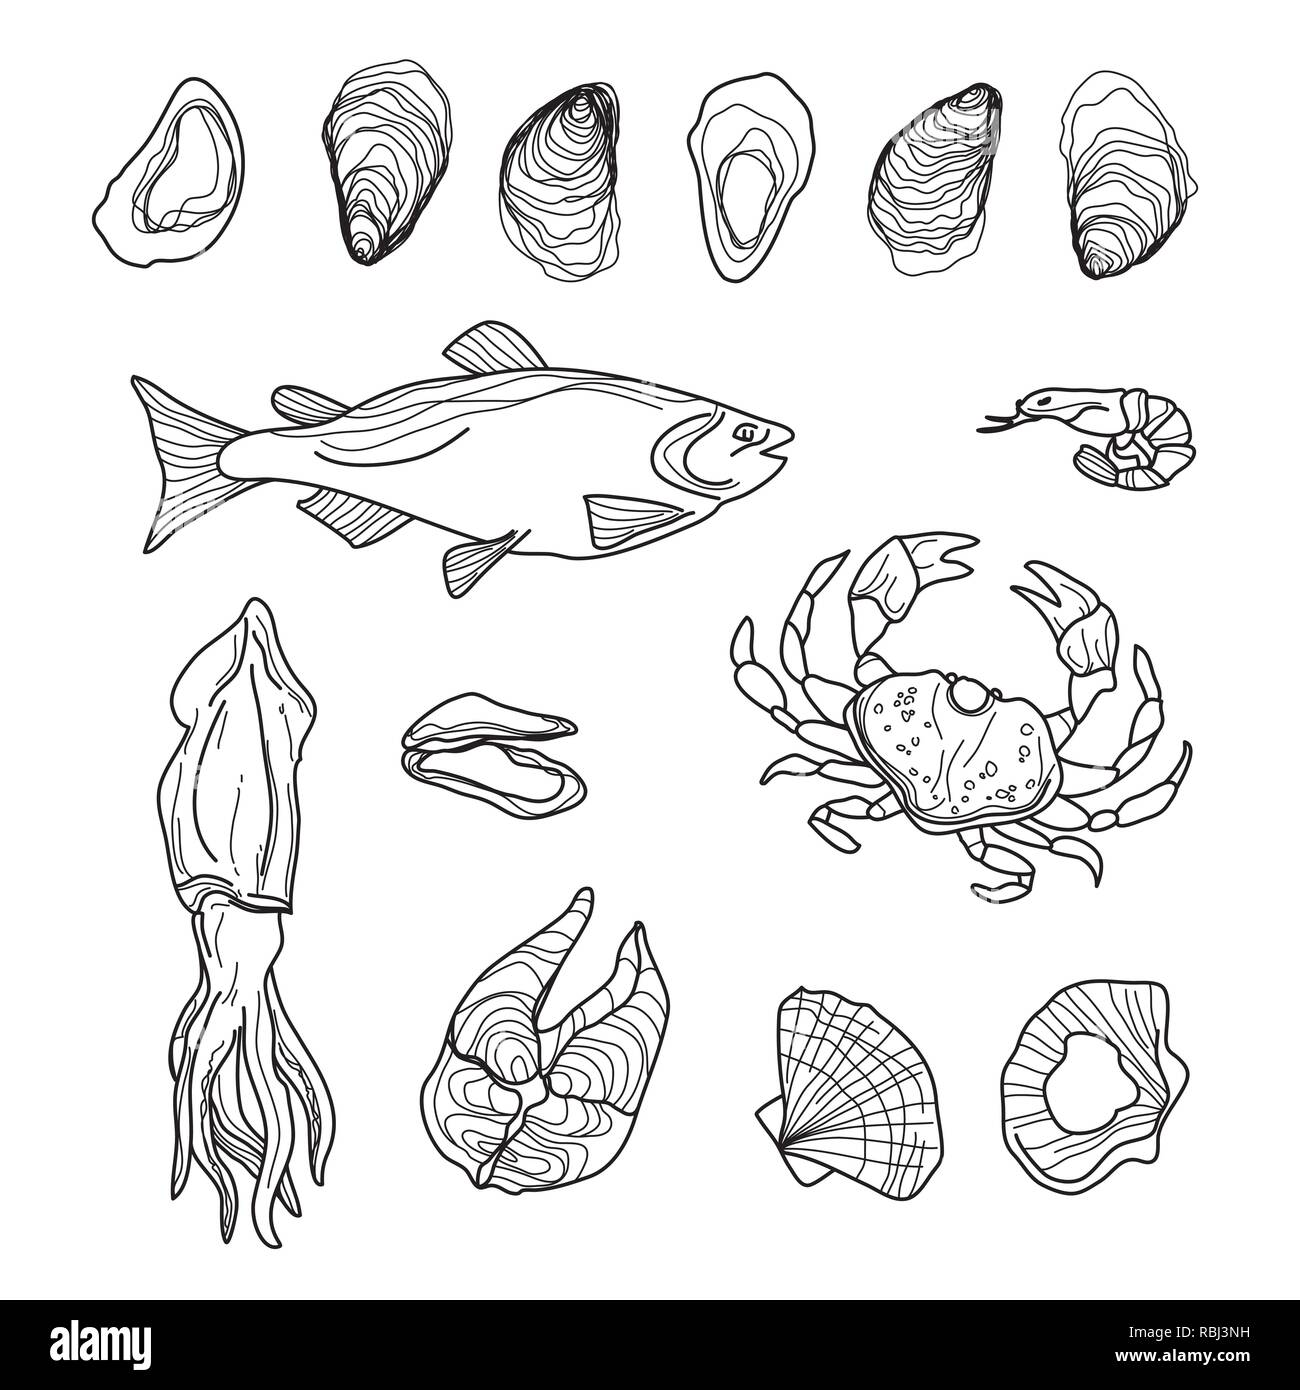 Disegnato a mano la raccolta di frutti di mare su bianco. Pesci, granchi, calamari, ostriche, gamberi, cozze, salmone Illustrazione Vettoriale